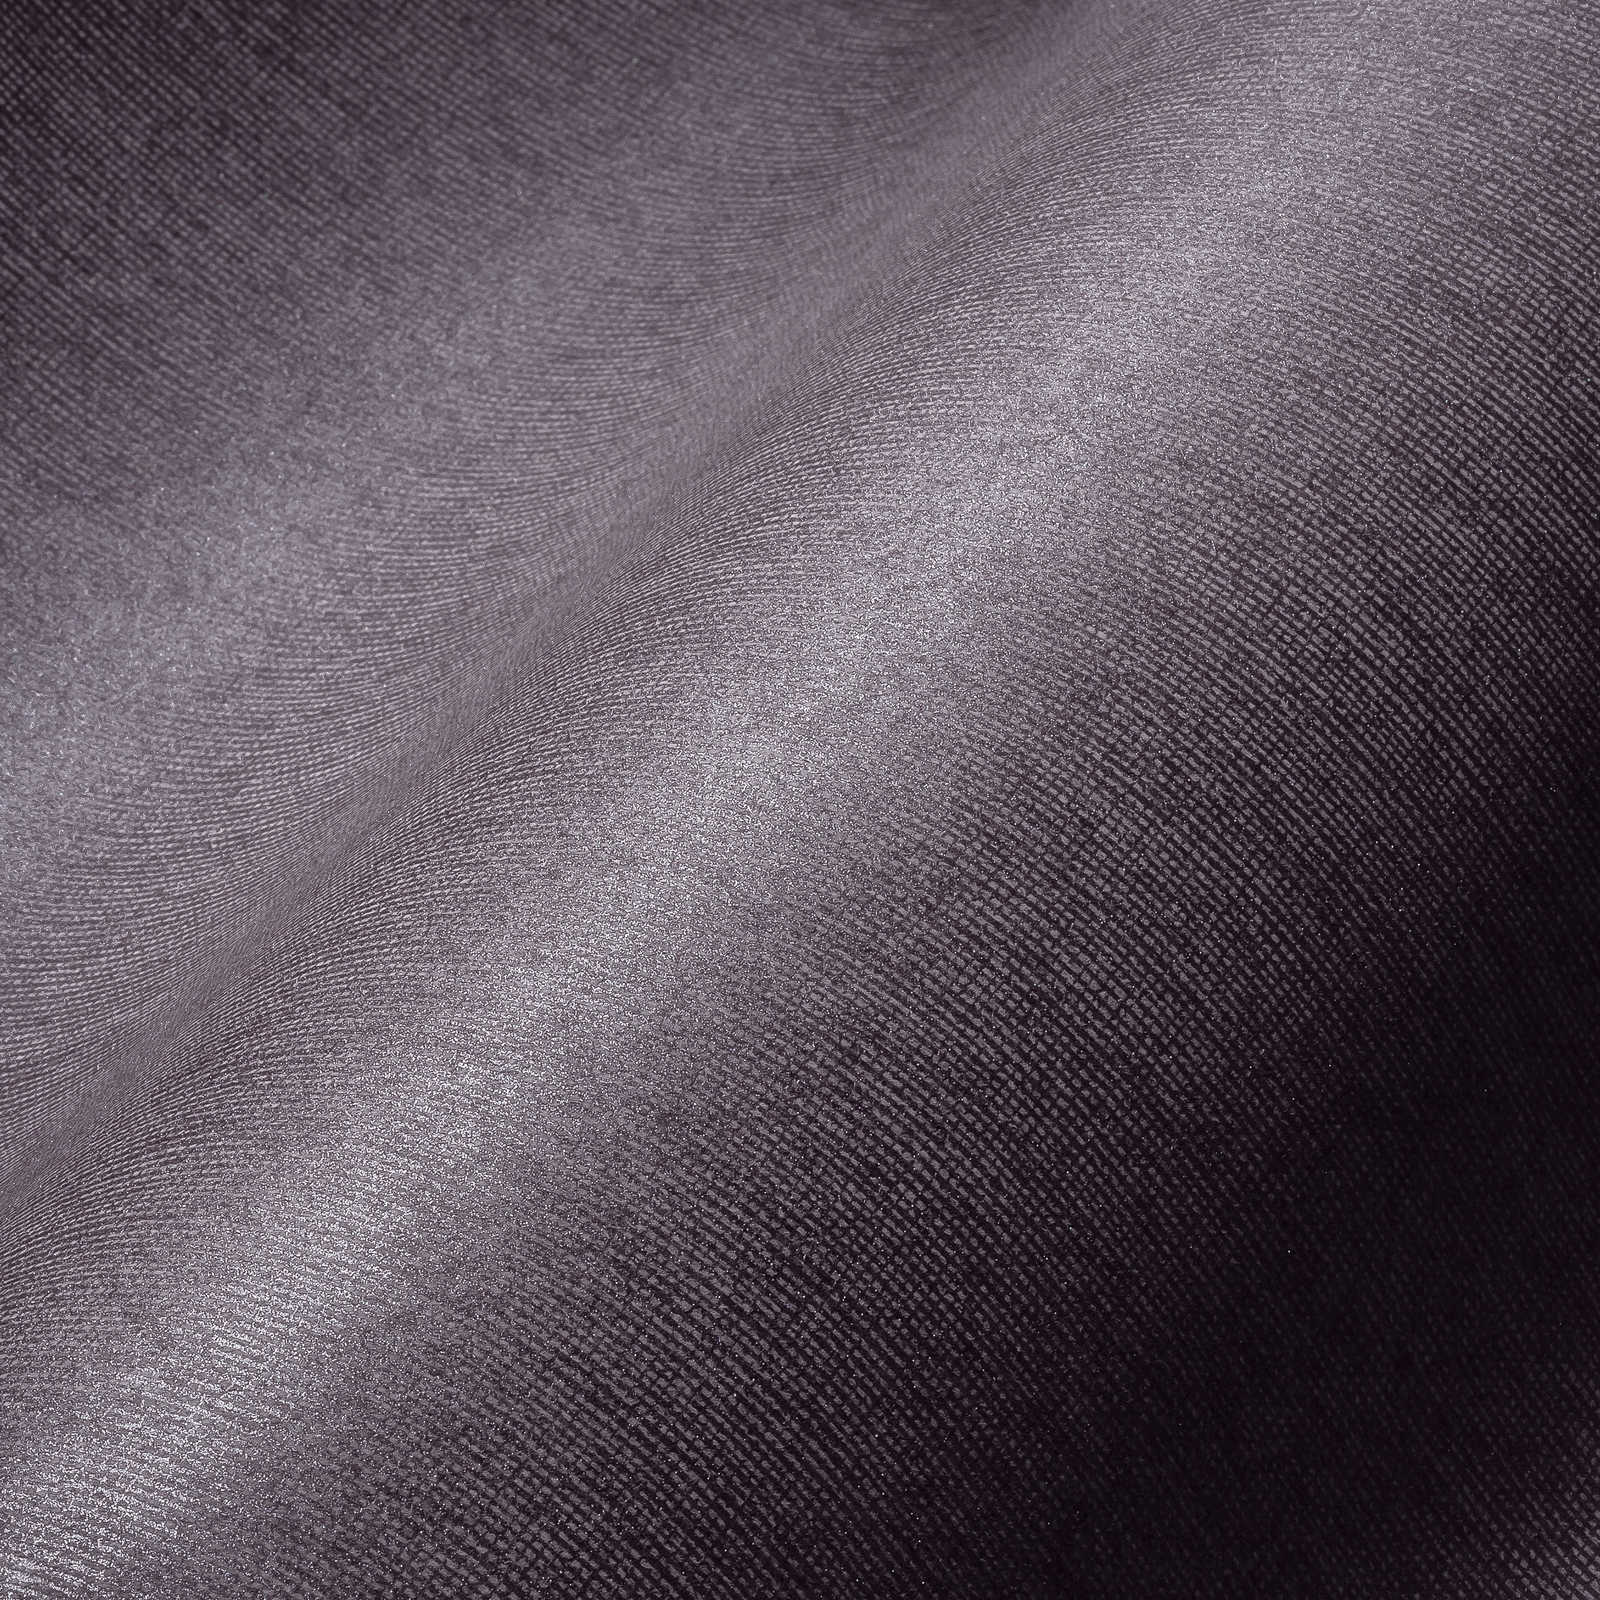             Glansbehang met textielstructuur & glanseffect - paars, grijs
        